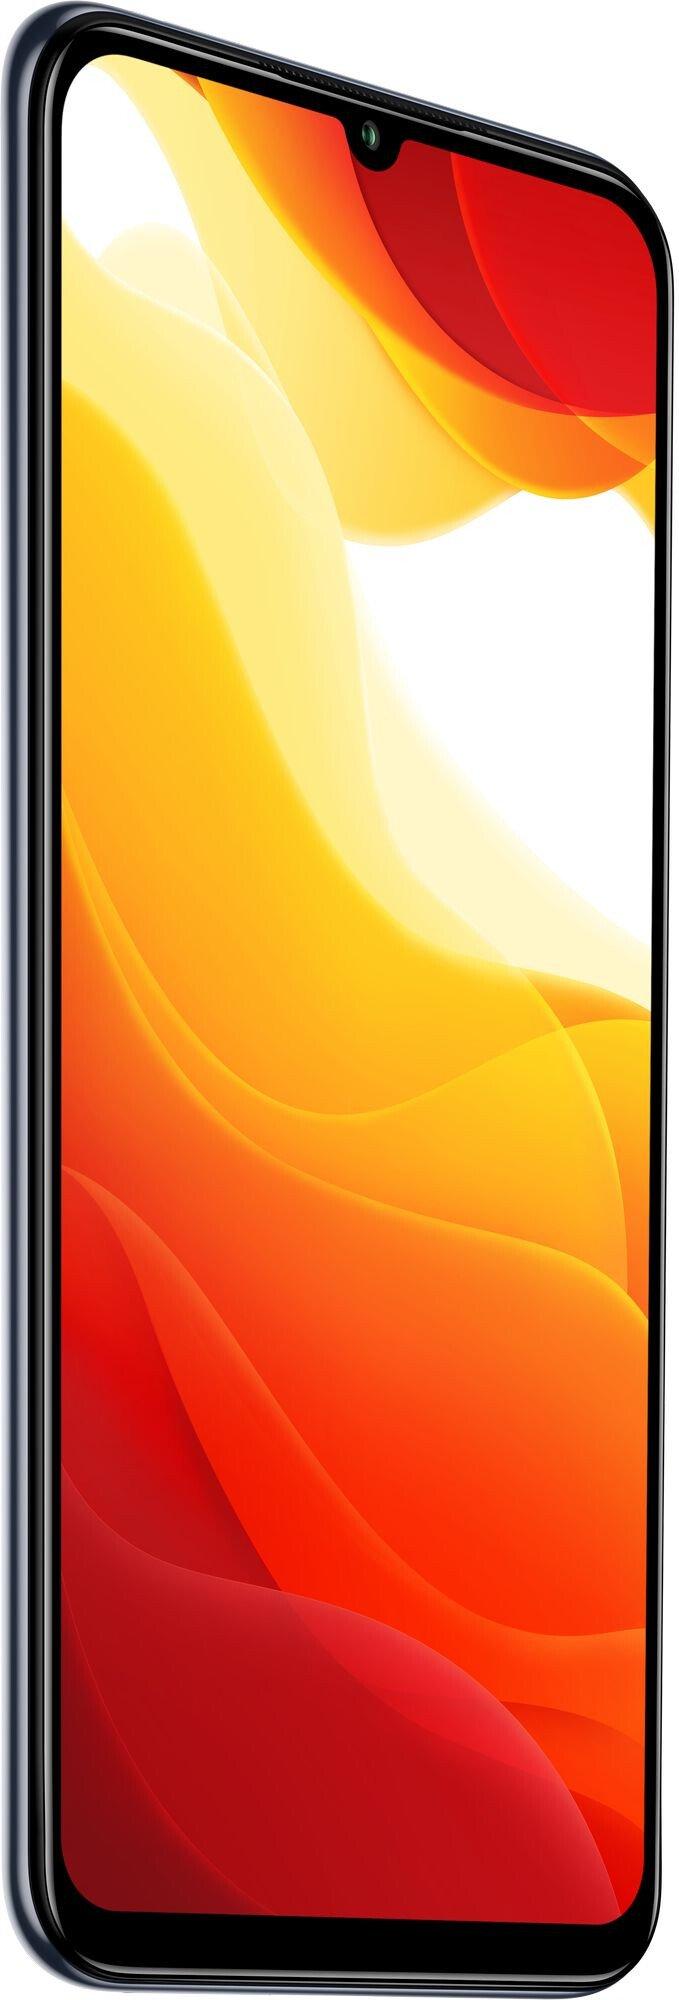 Цена Смартфон Xiaomi Mi 10 Lite 5G 6/128Gb Cosmic Grey